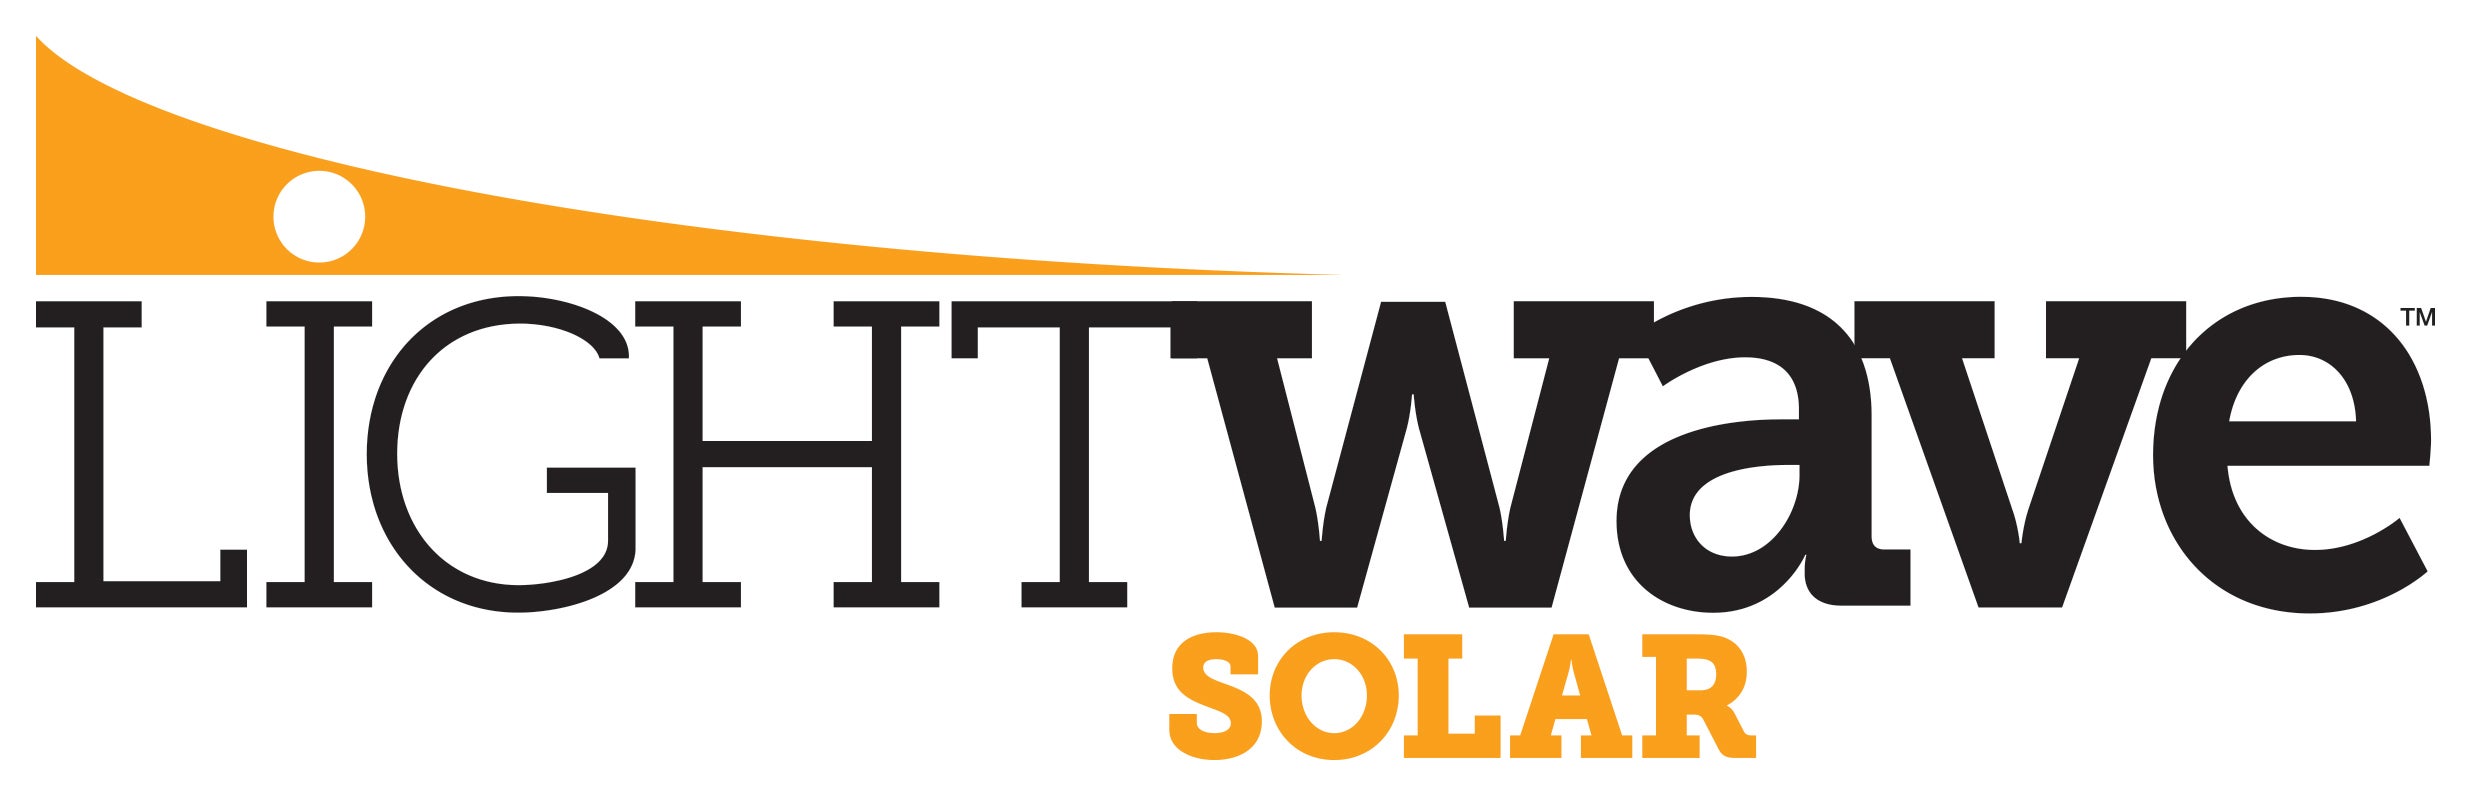 LightWave Solar logo